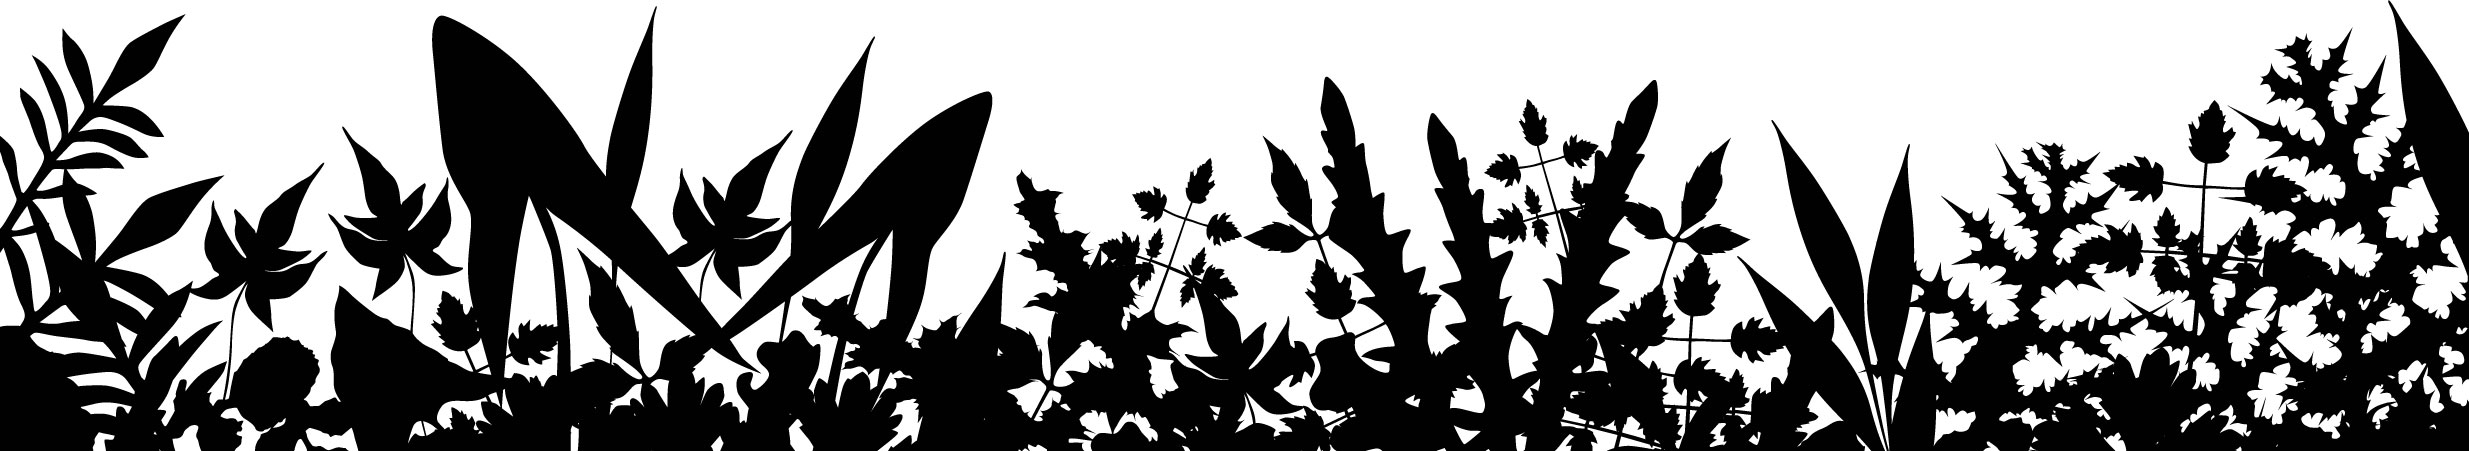 葉っぱの見本画像-群生の葉５